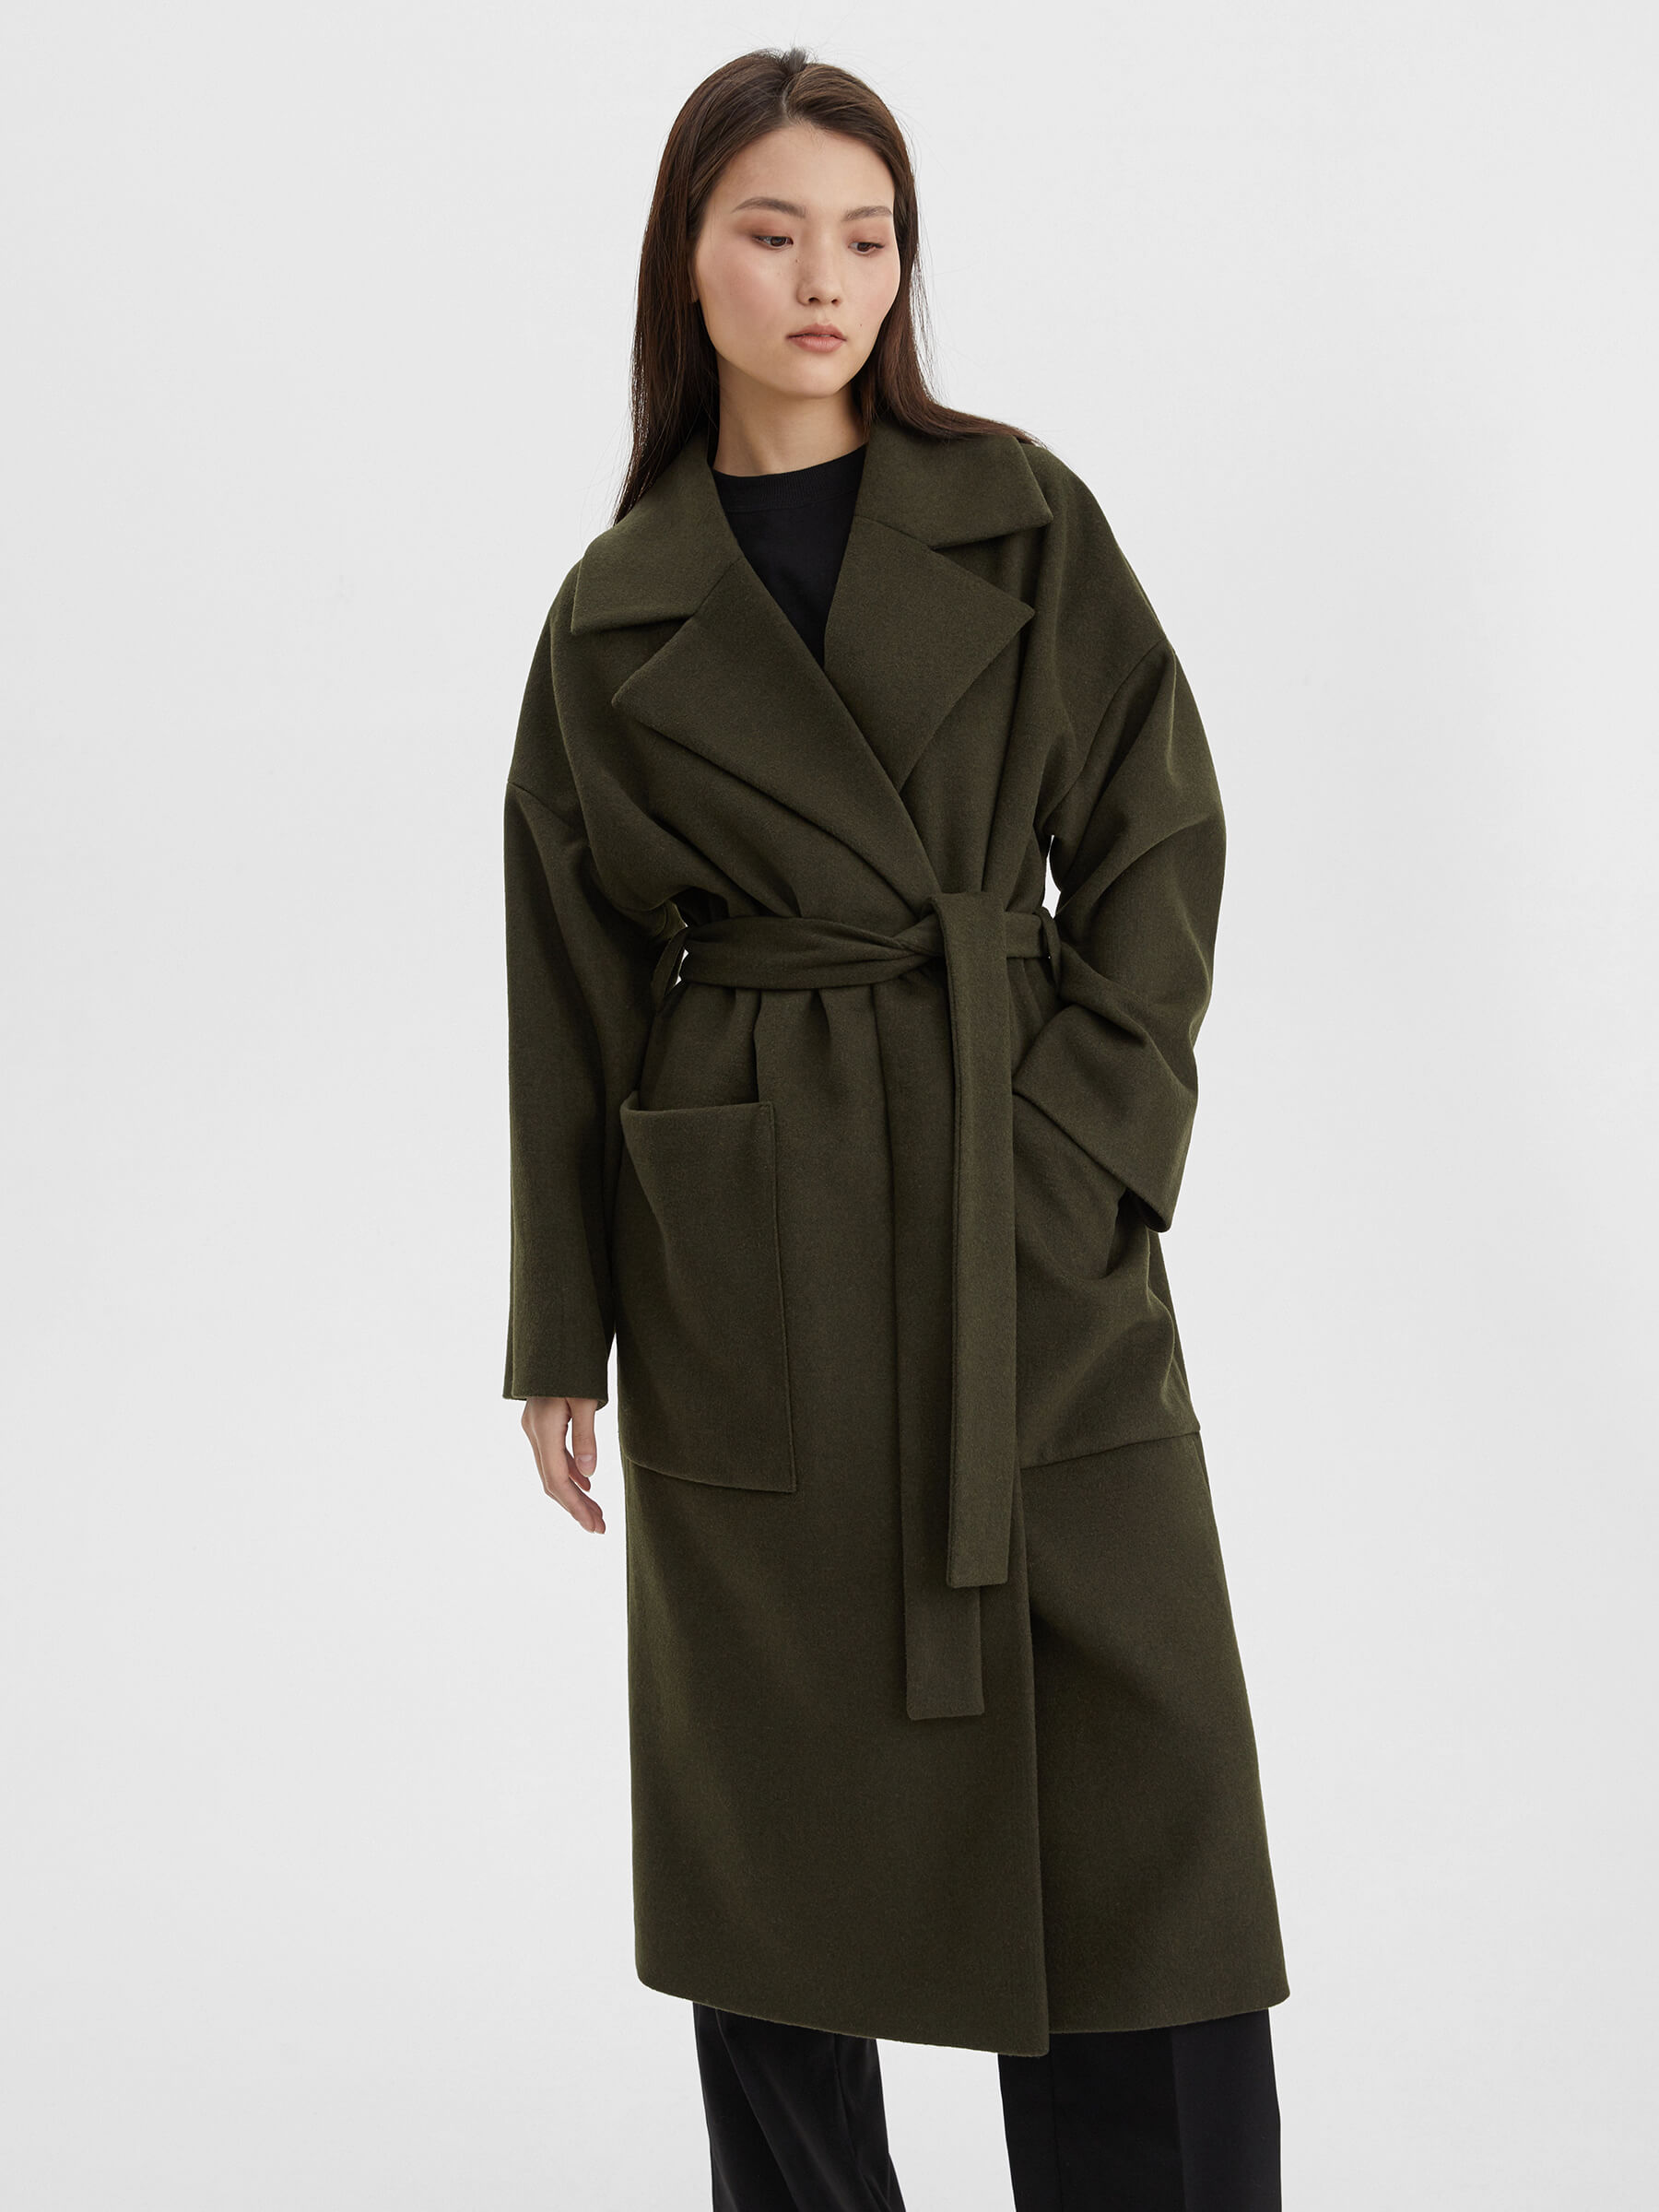 женское хлопковое пальто с большим меховым воротником свободного покроя средней длины m289 Пальто женское длинное с объемными карманами и поясом, цвет – хаки